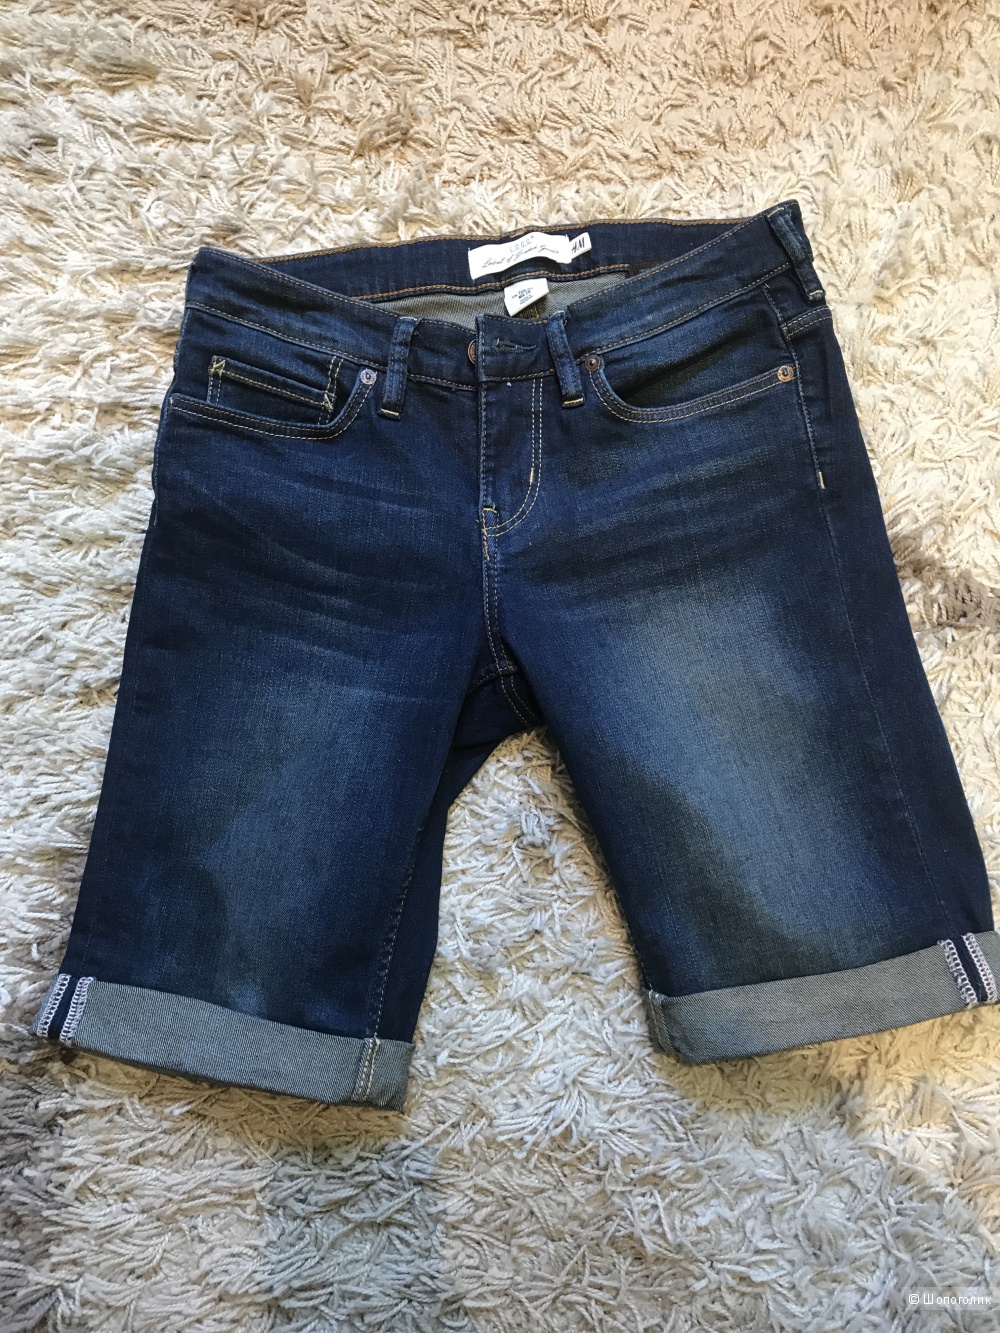 Новые темно-синие джинсовые шорты L.O.G.G. H&M размер 28